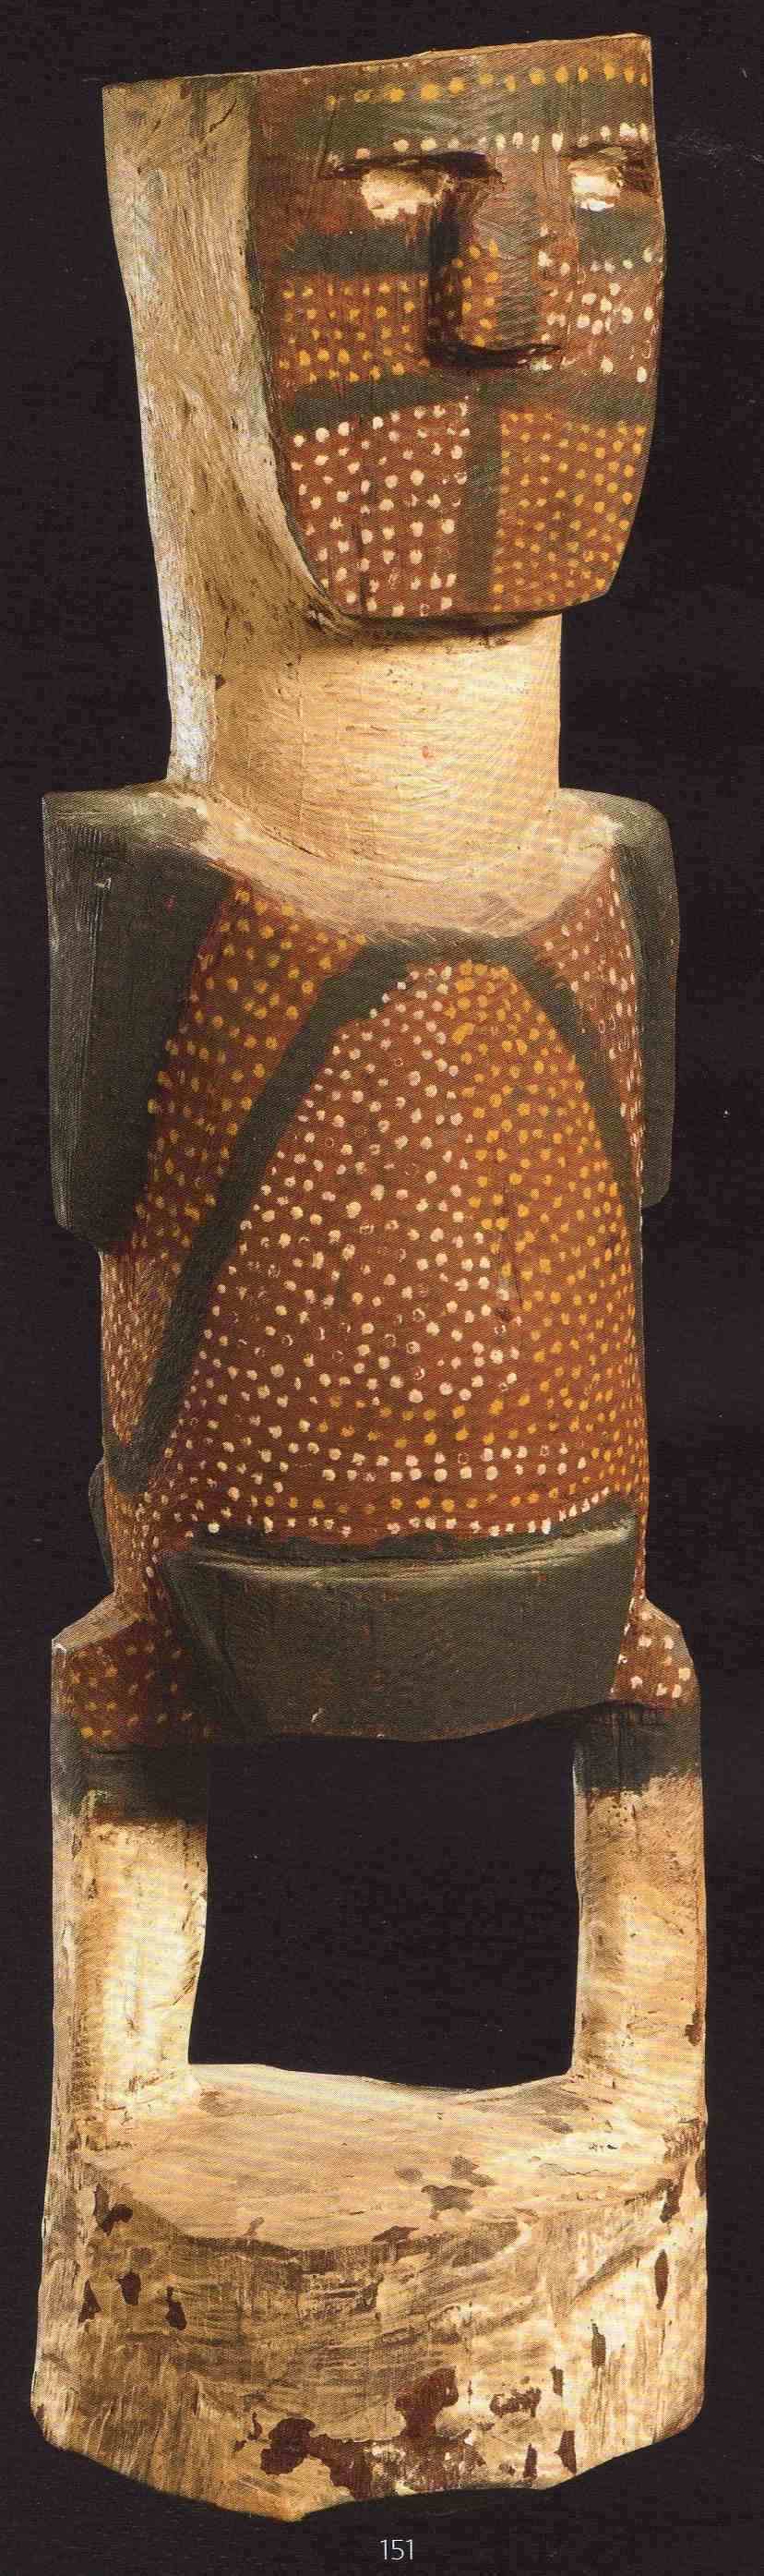 aboriginal sculpture by PURAWARRUMPATU